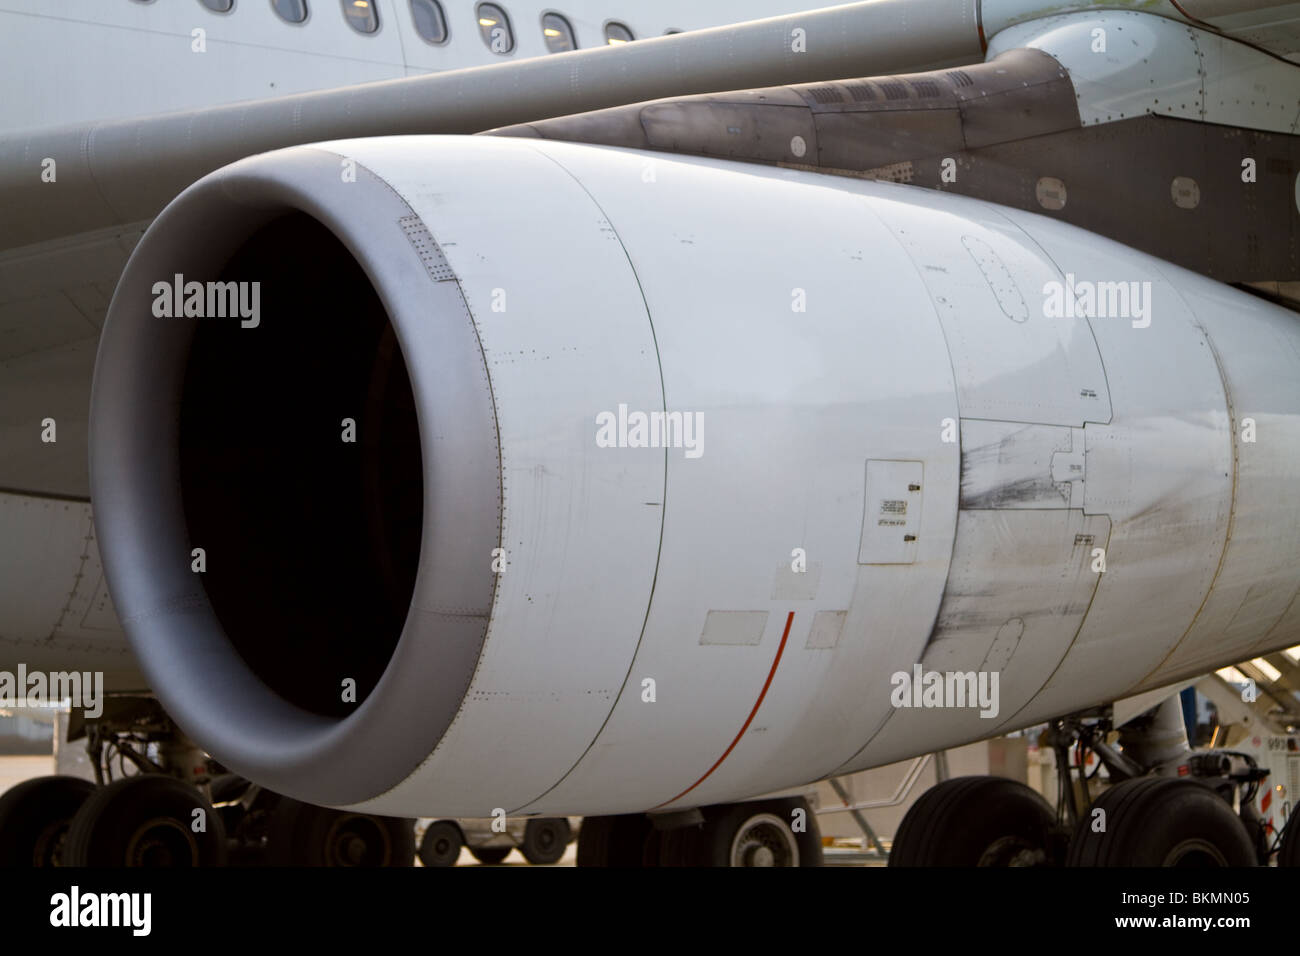 Un gros plan d'un moteur à réaction à partir d'un avion commercial, prise juste après la sortie de l'avion. Banque D'Images